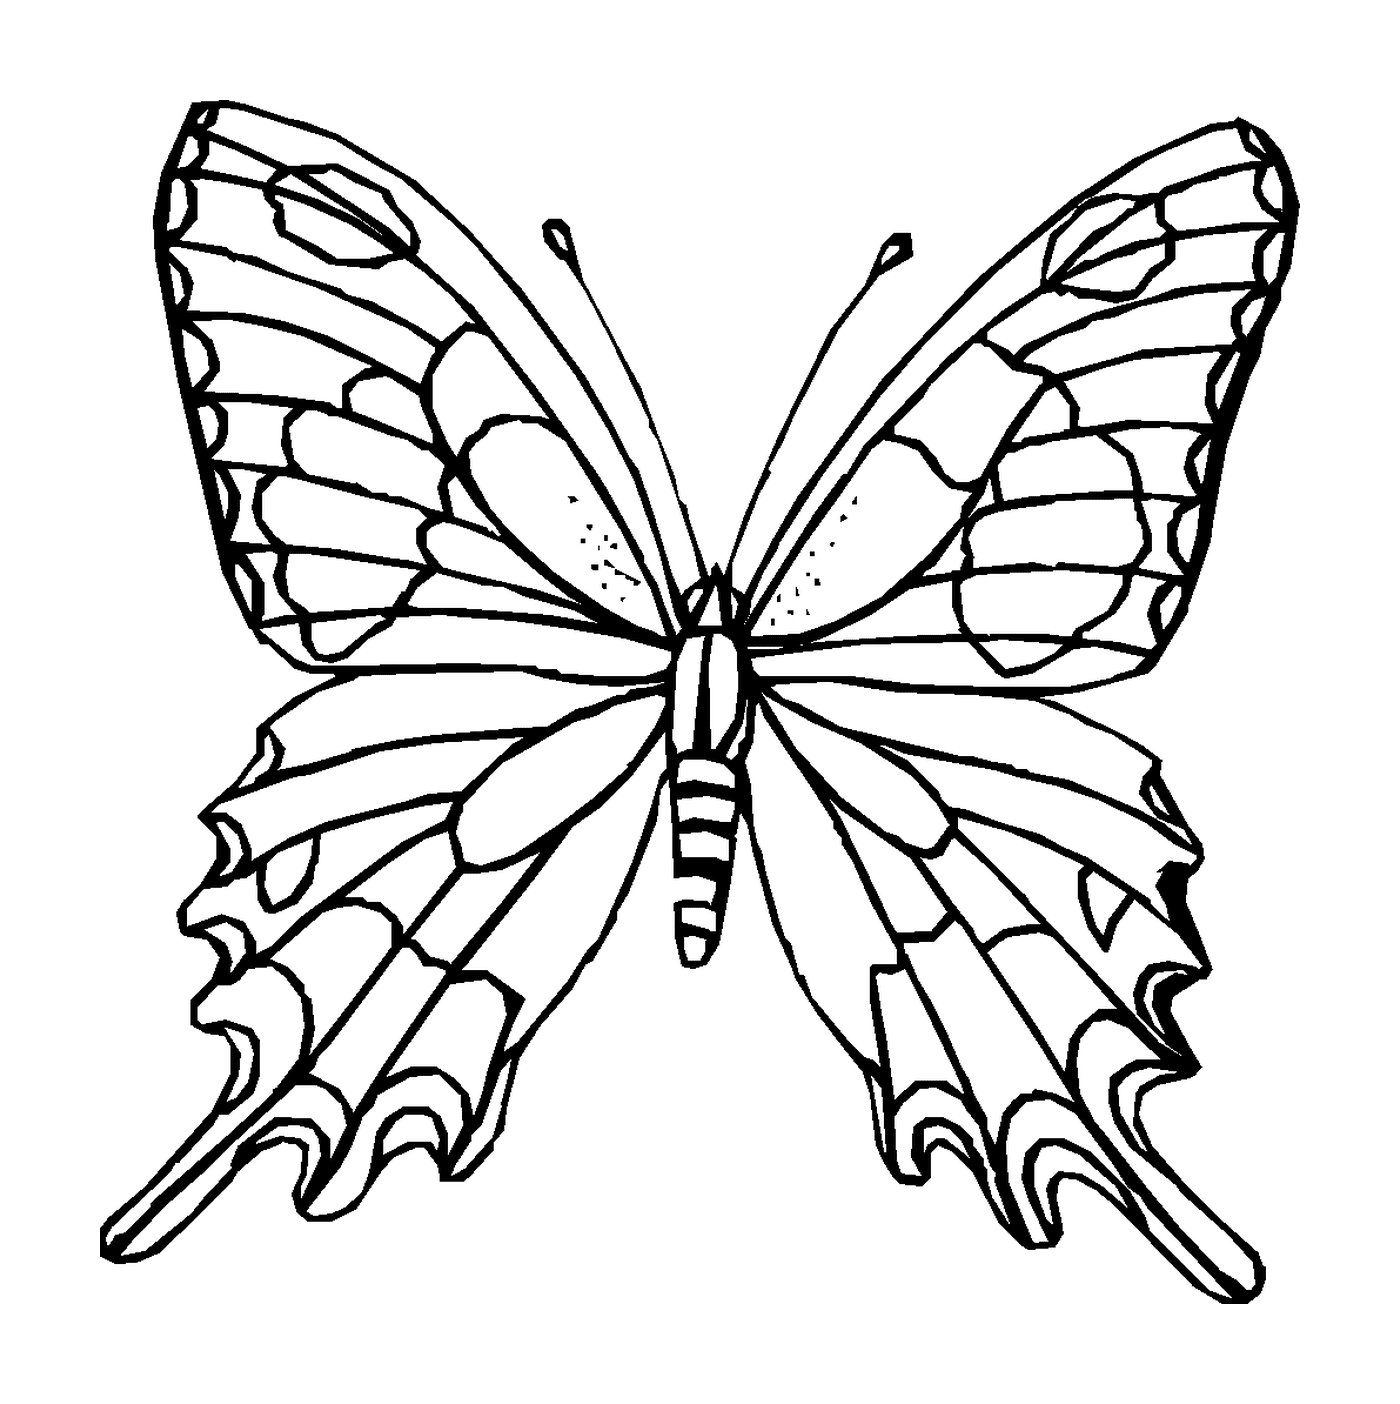  带半透明翼的斜蝴蝶 